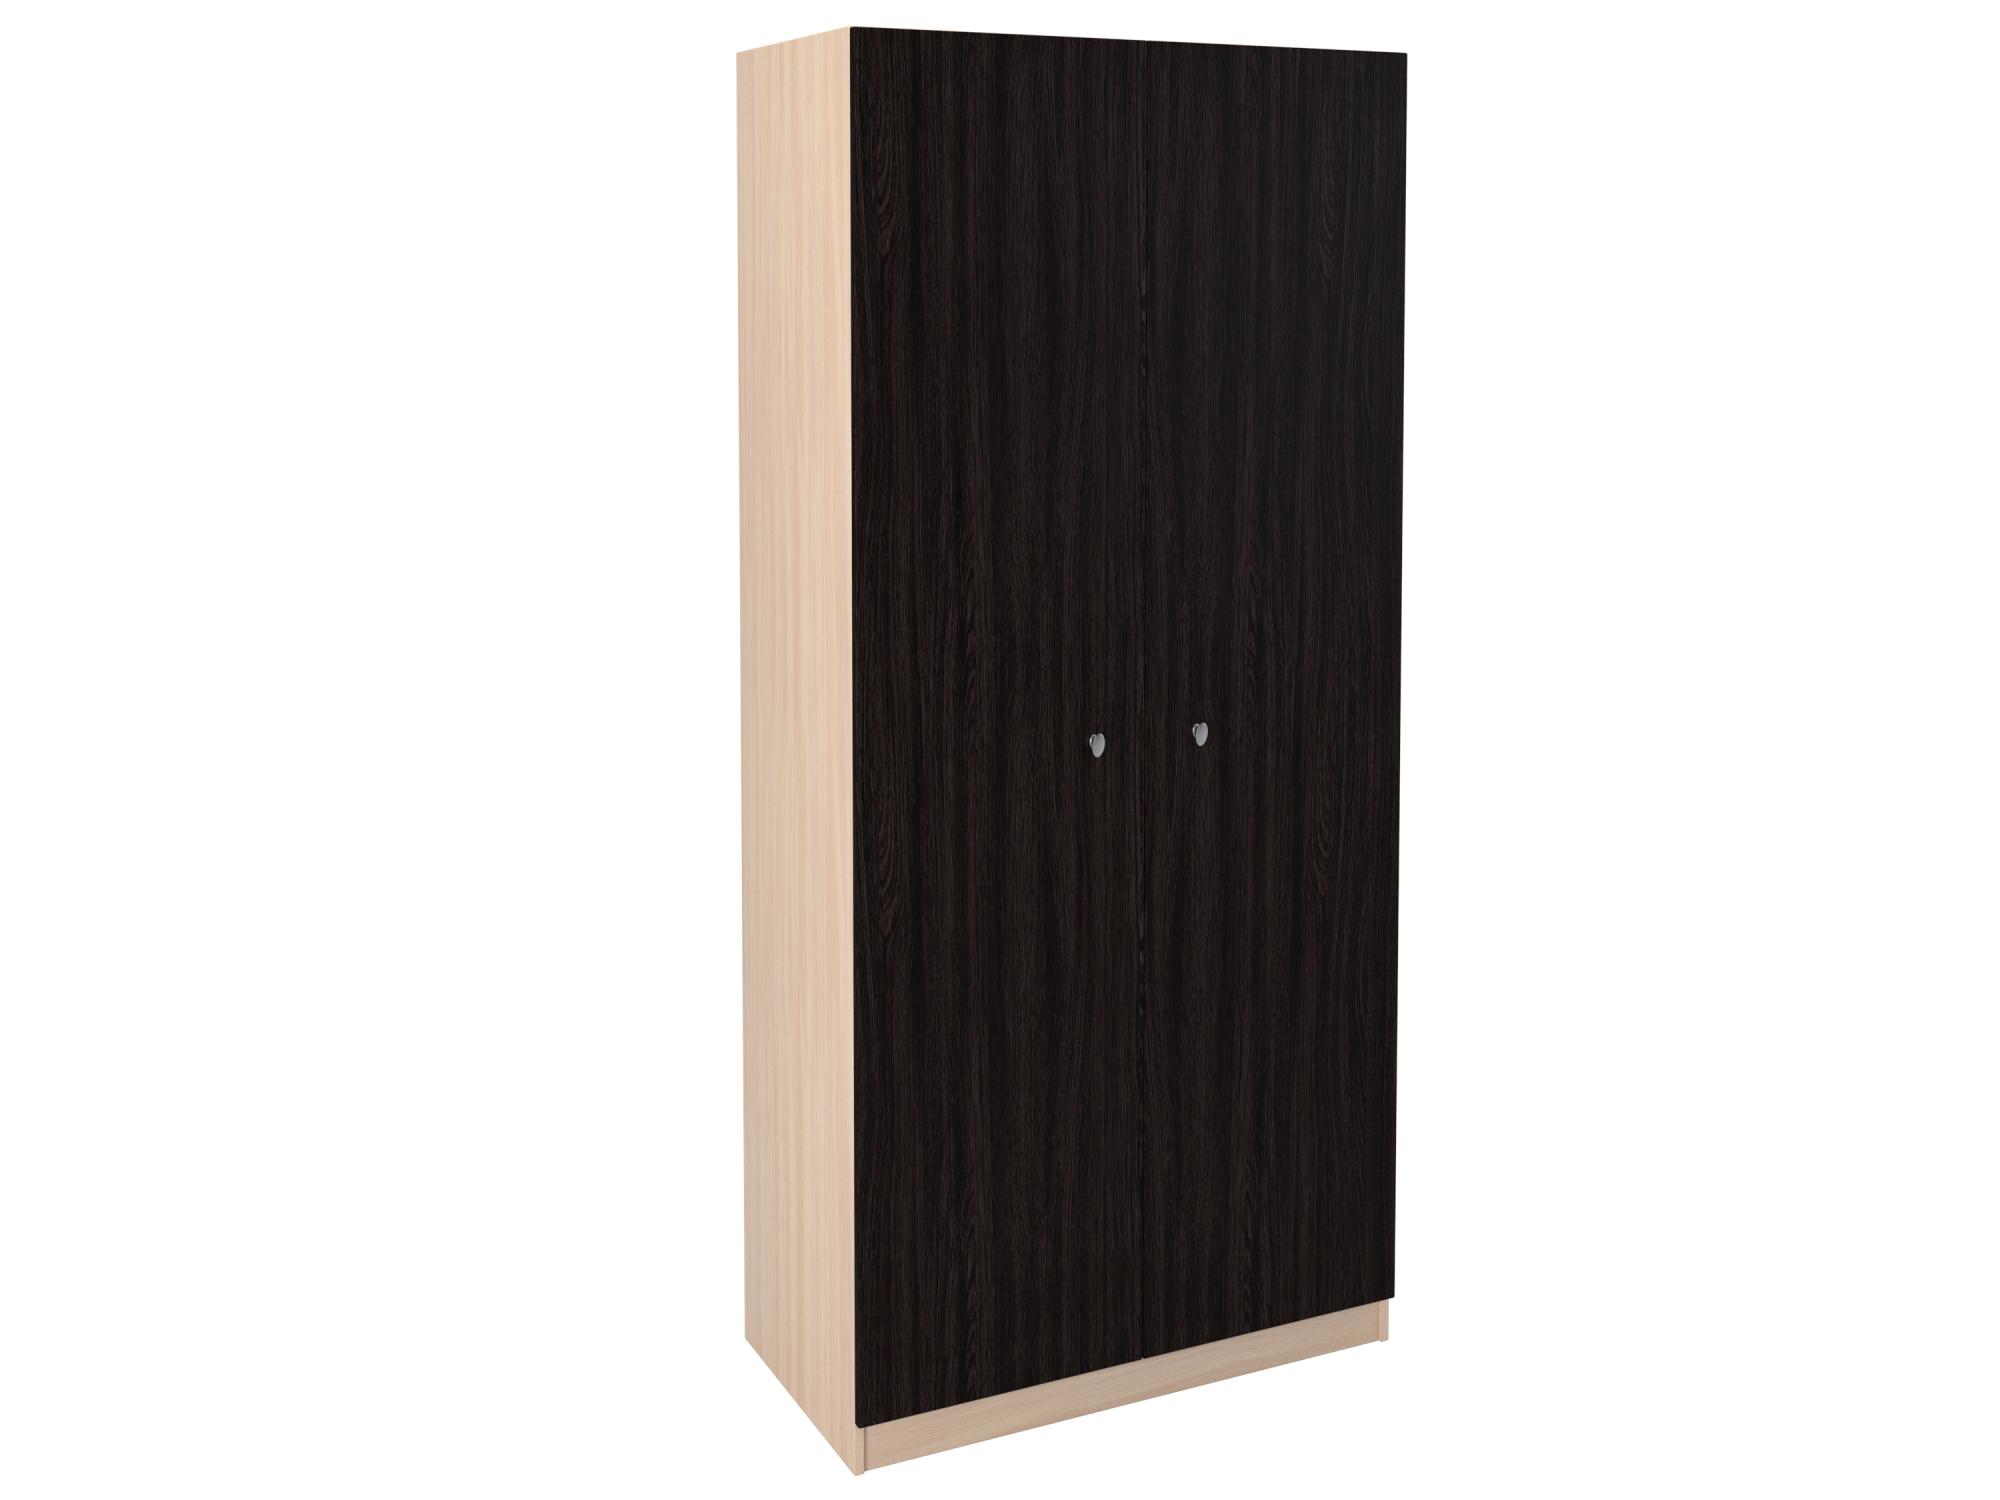 Бельевые шкафы Шкаф прямой 45 дуб молочный/венге (рв-мебель) коричневый 90x45x200 см.